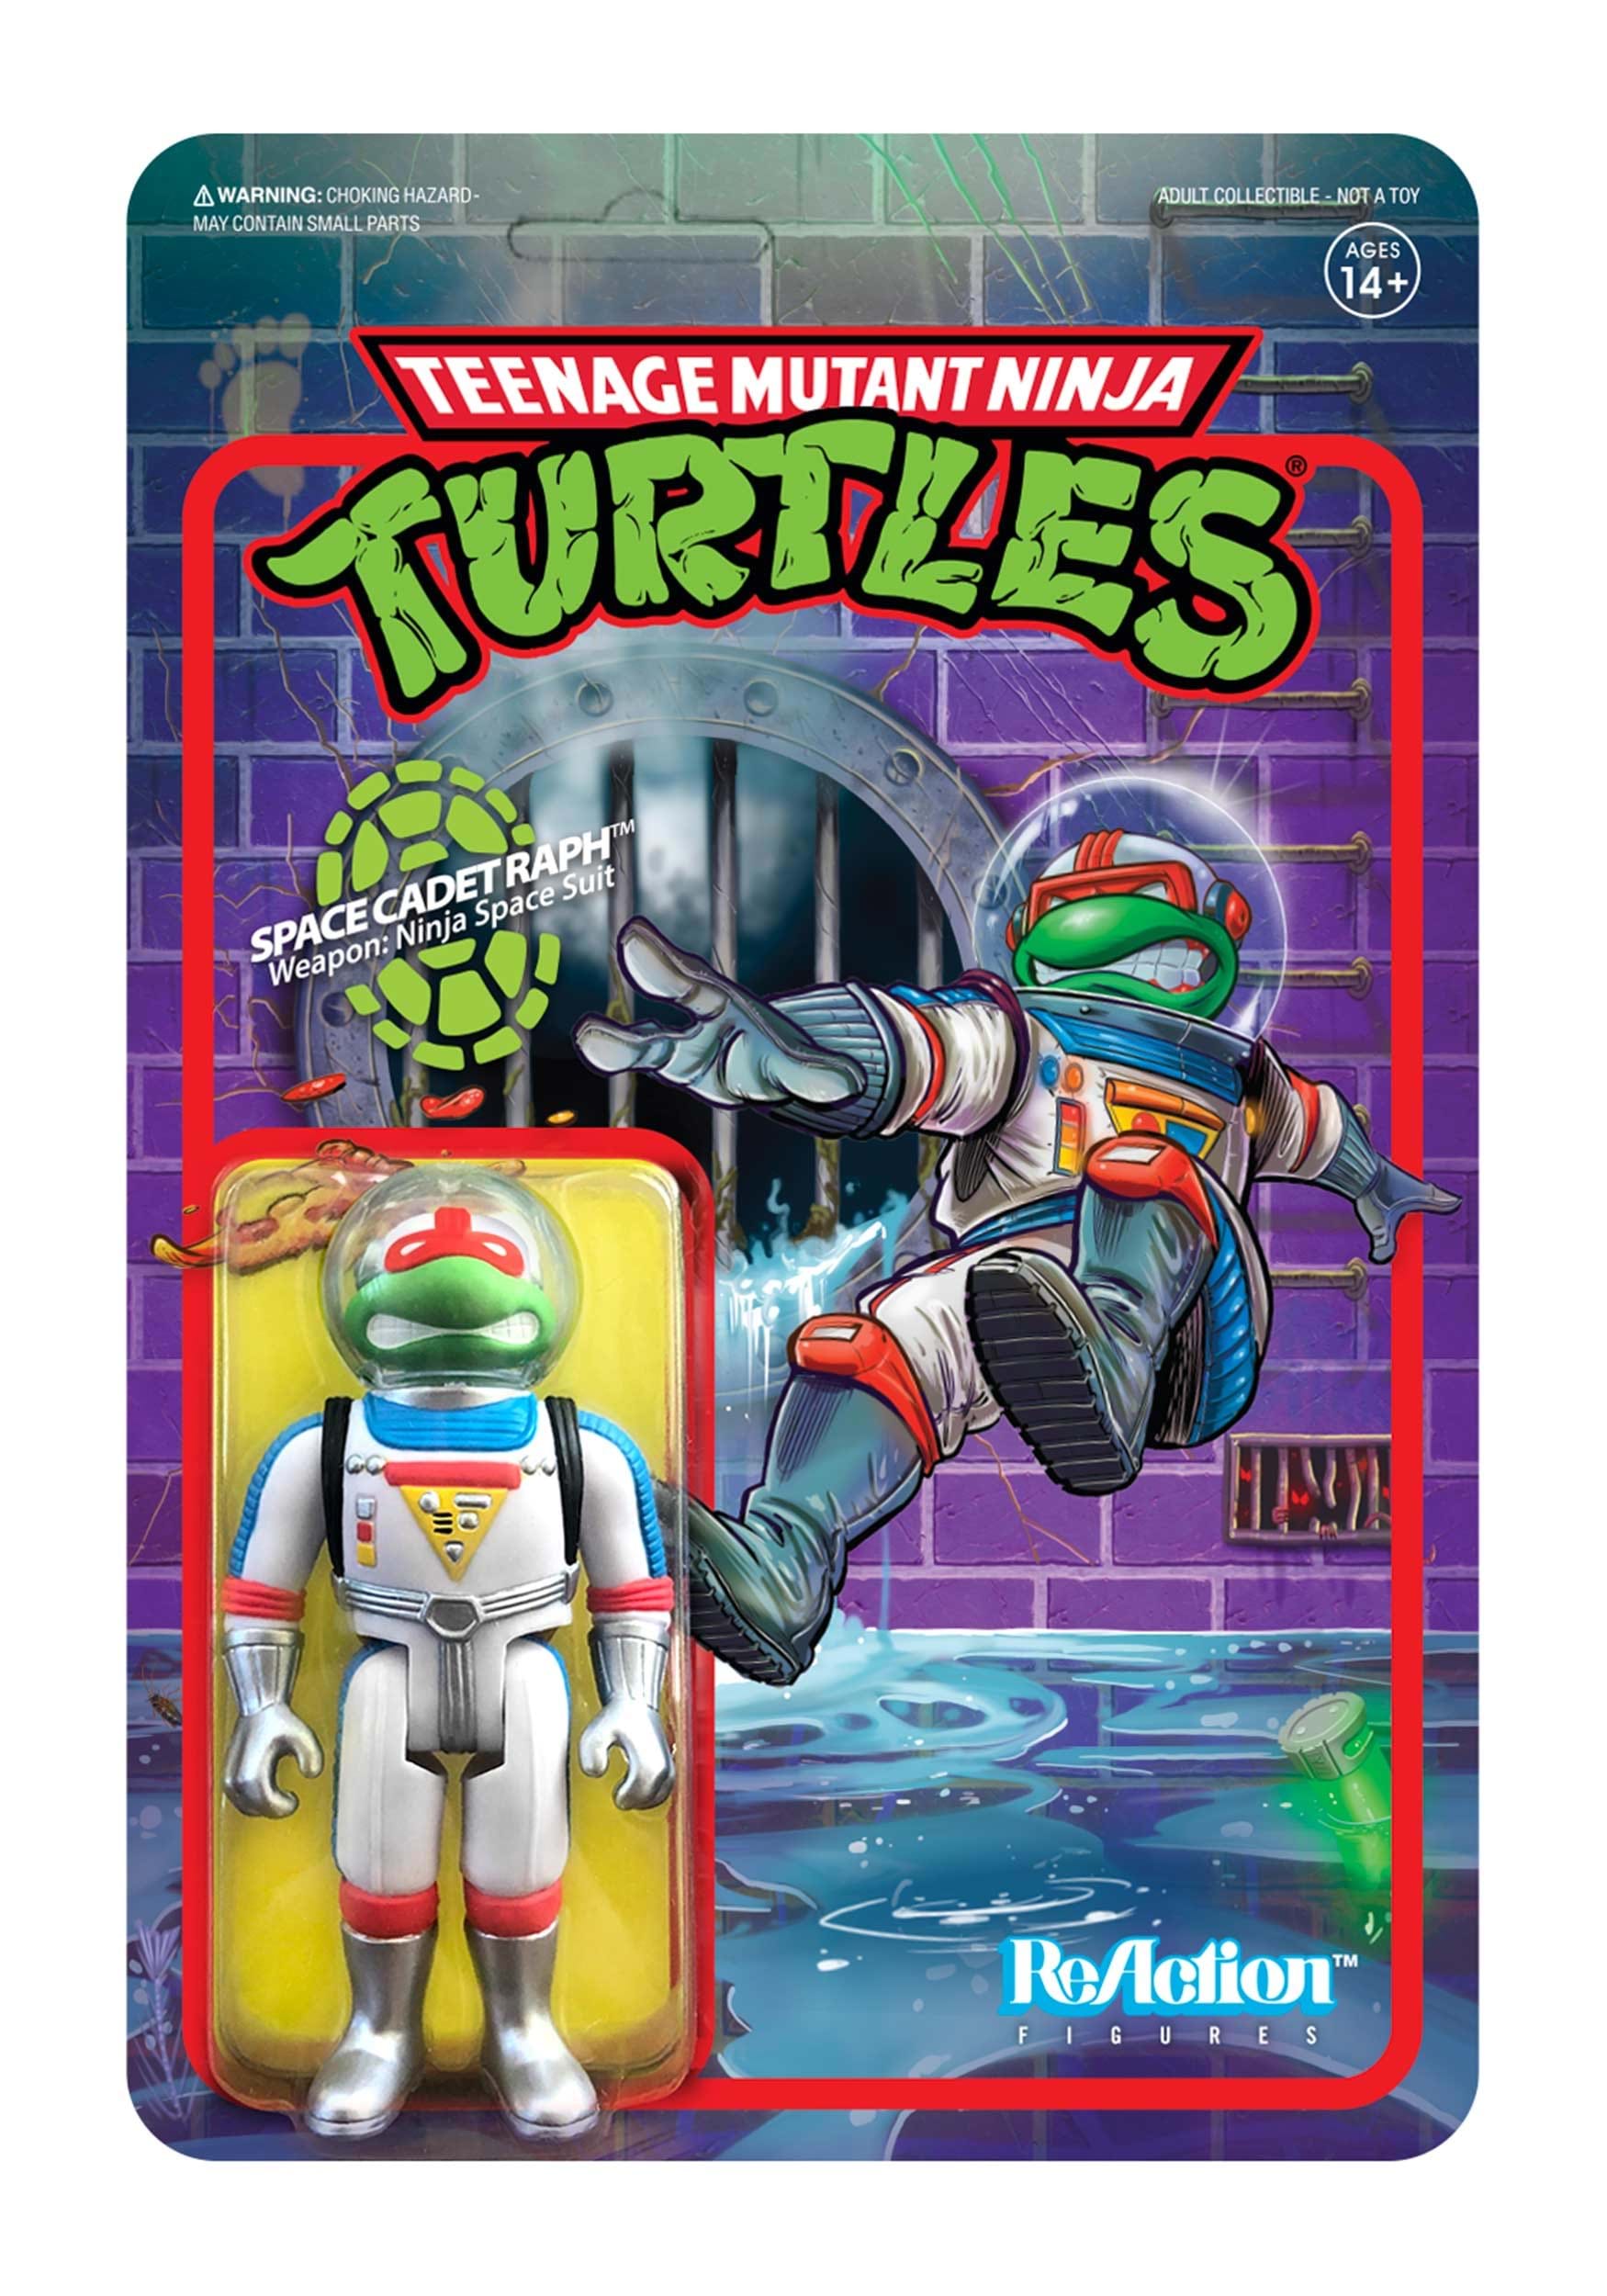 Teenage Mutant Ninja Turtles ReAction Space Cadet Raphael Figure